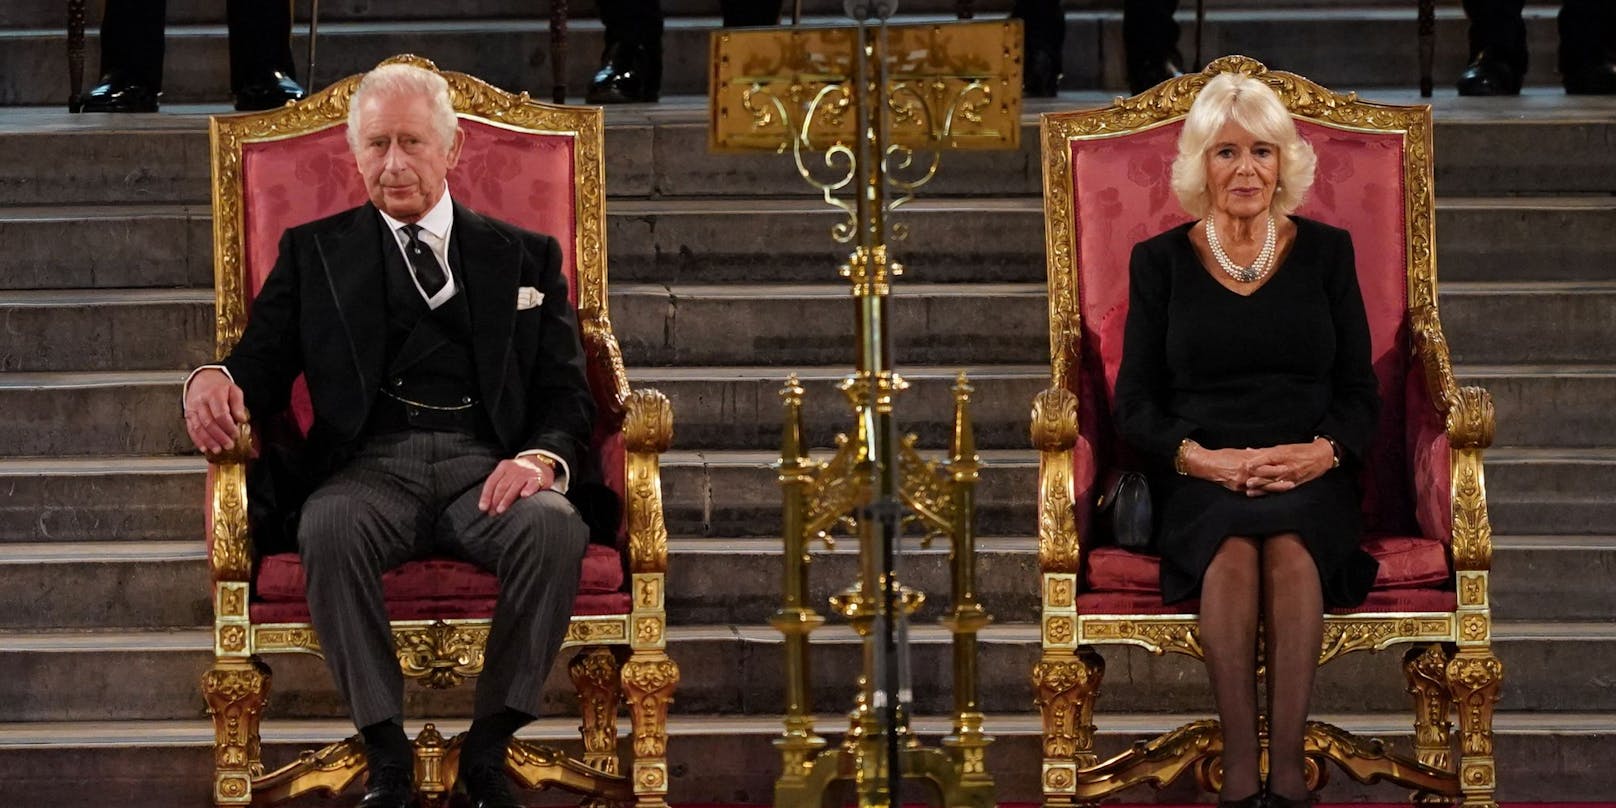 König Charles III. mit Ehefrau Camilla